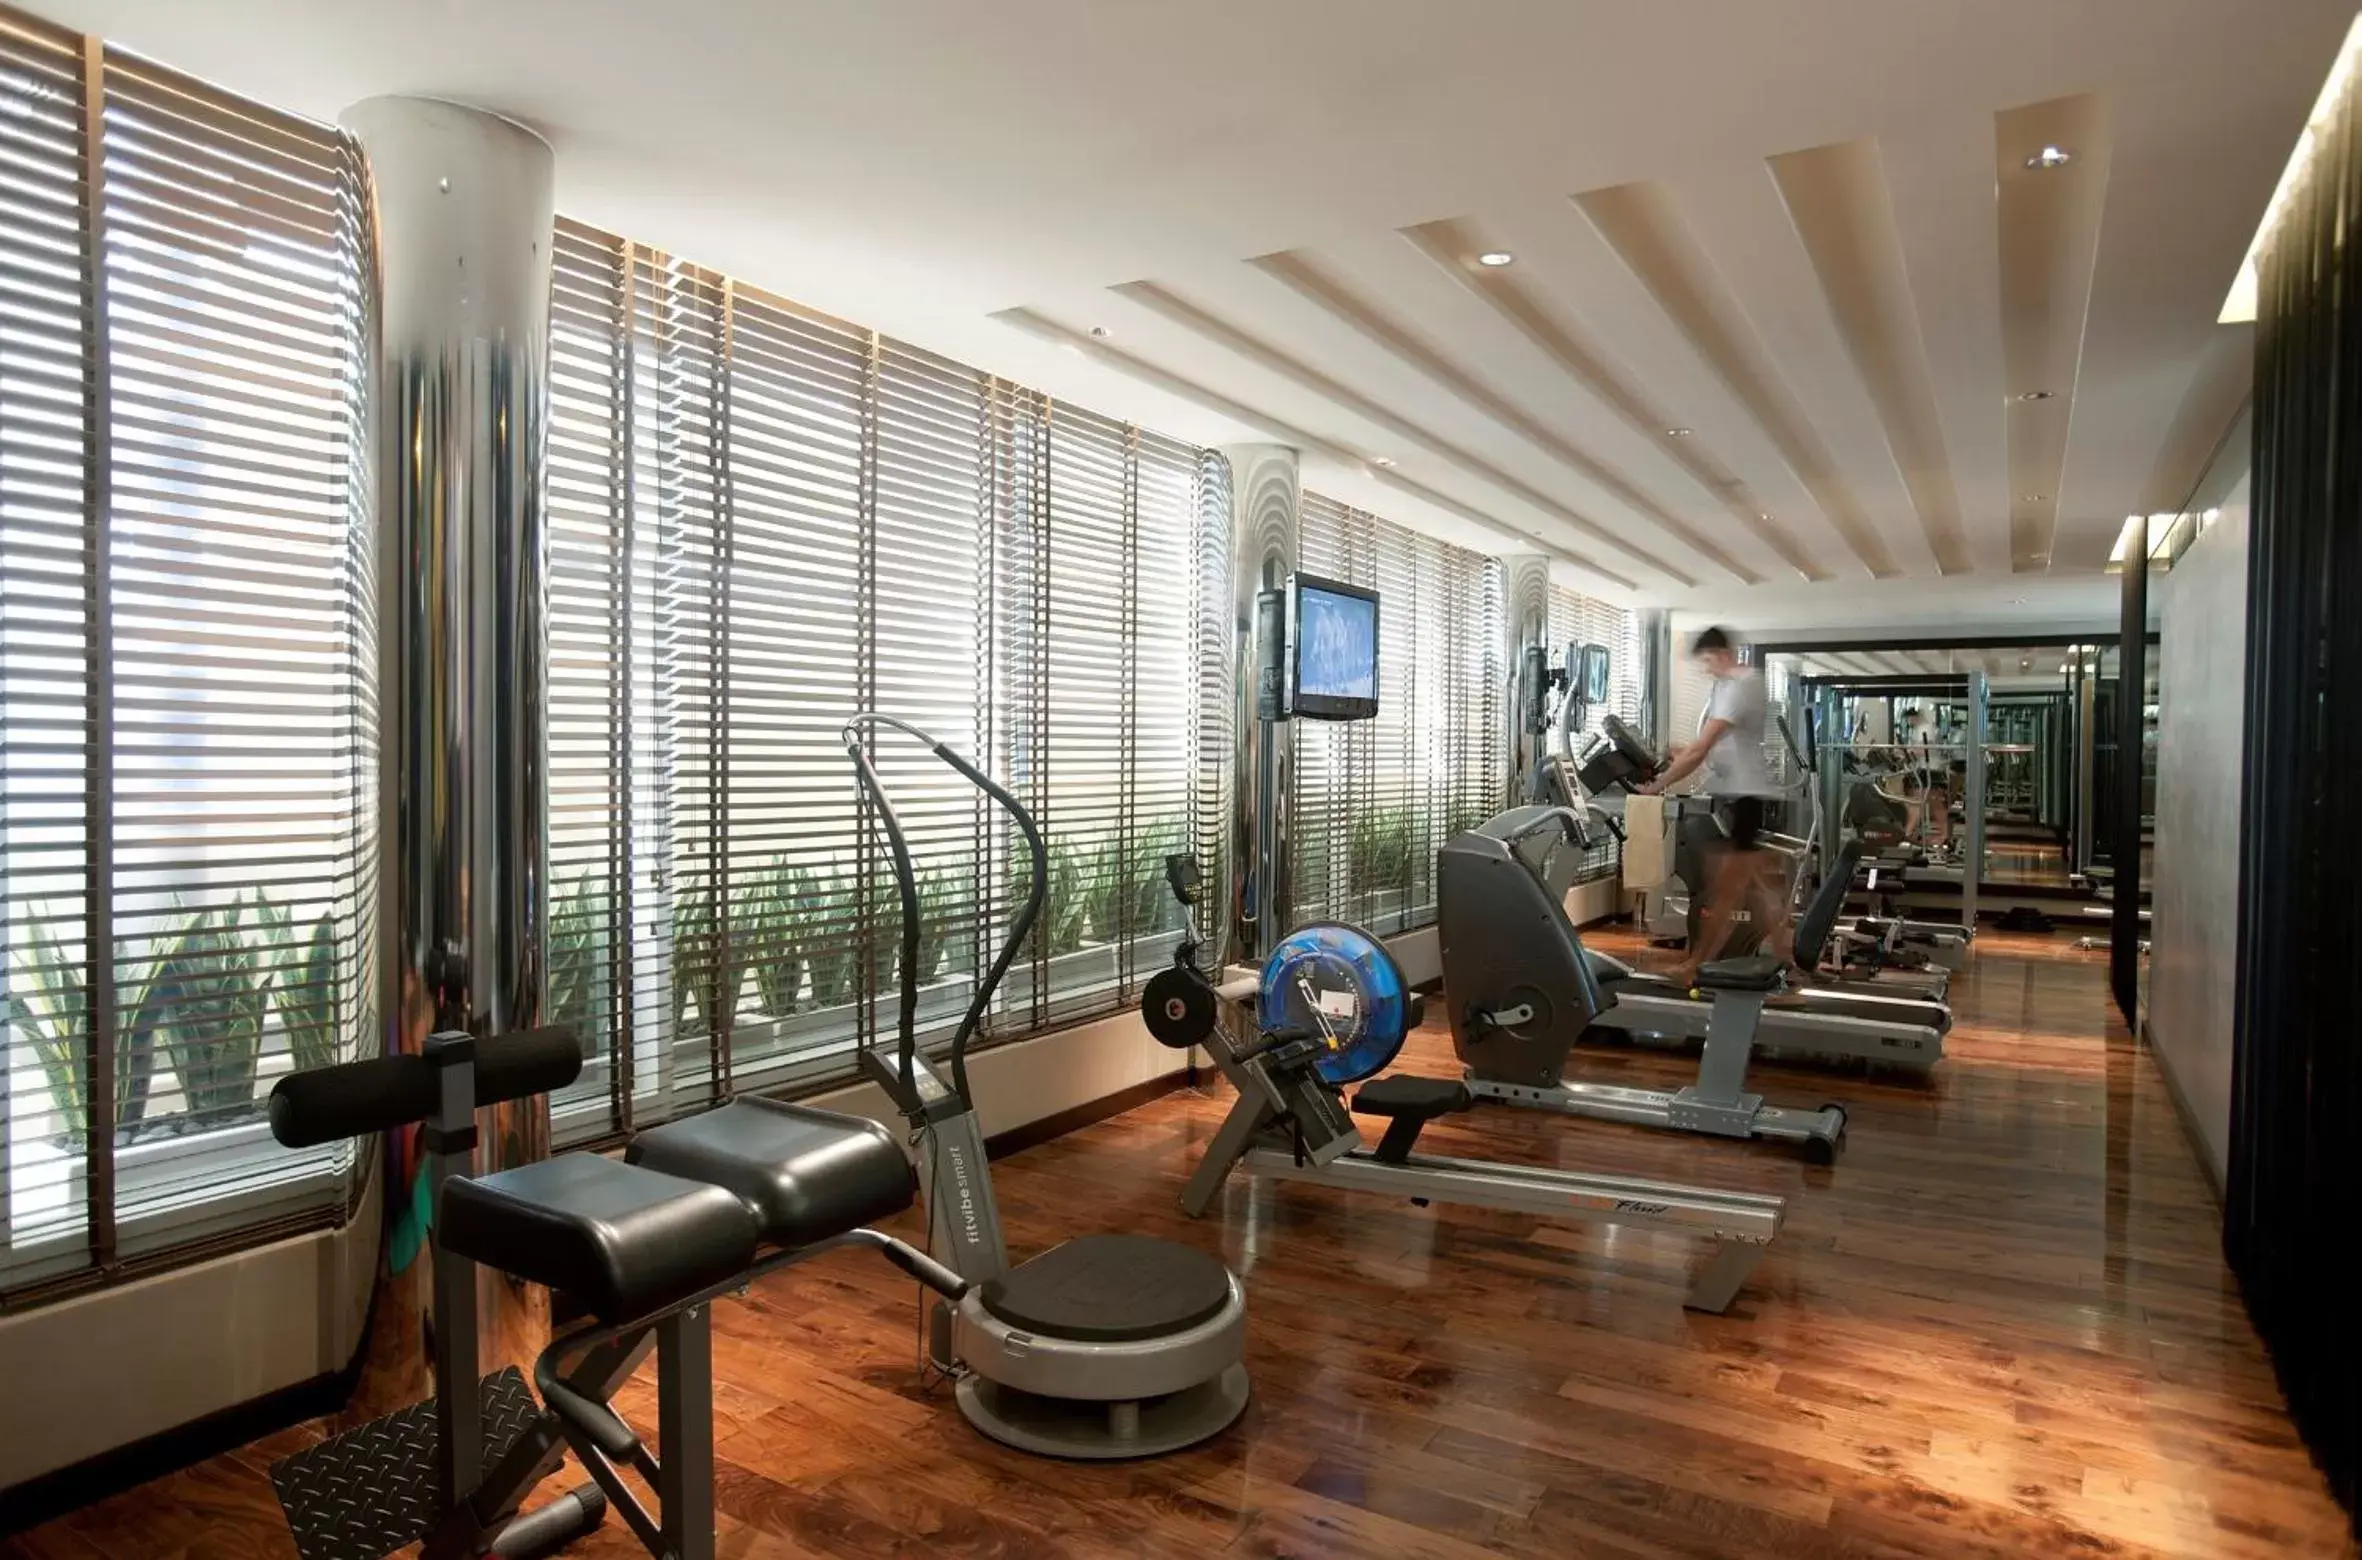 Fitness centre/facilities, Fitness Center/Facilities in Centro Barsha - by Rotana